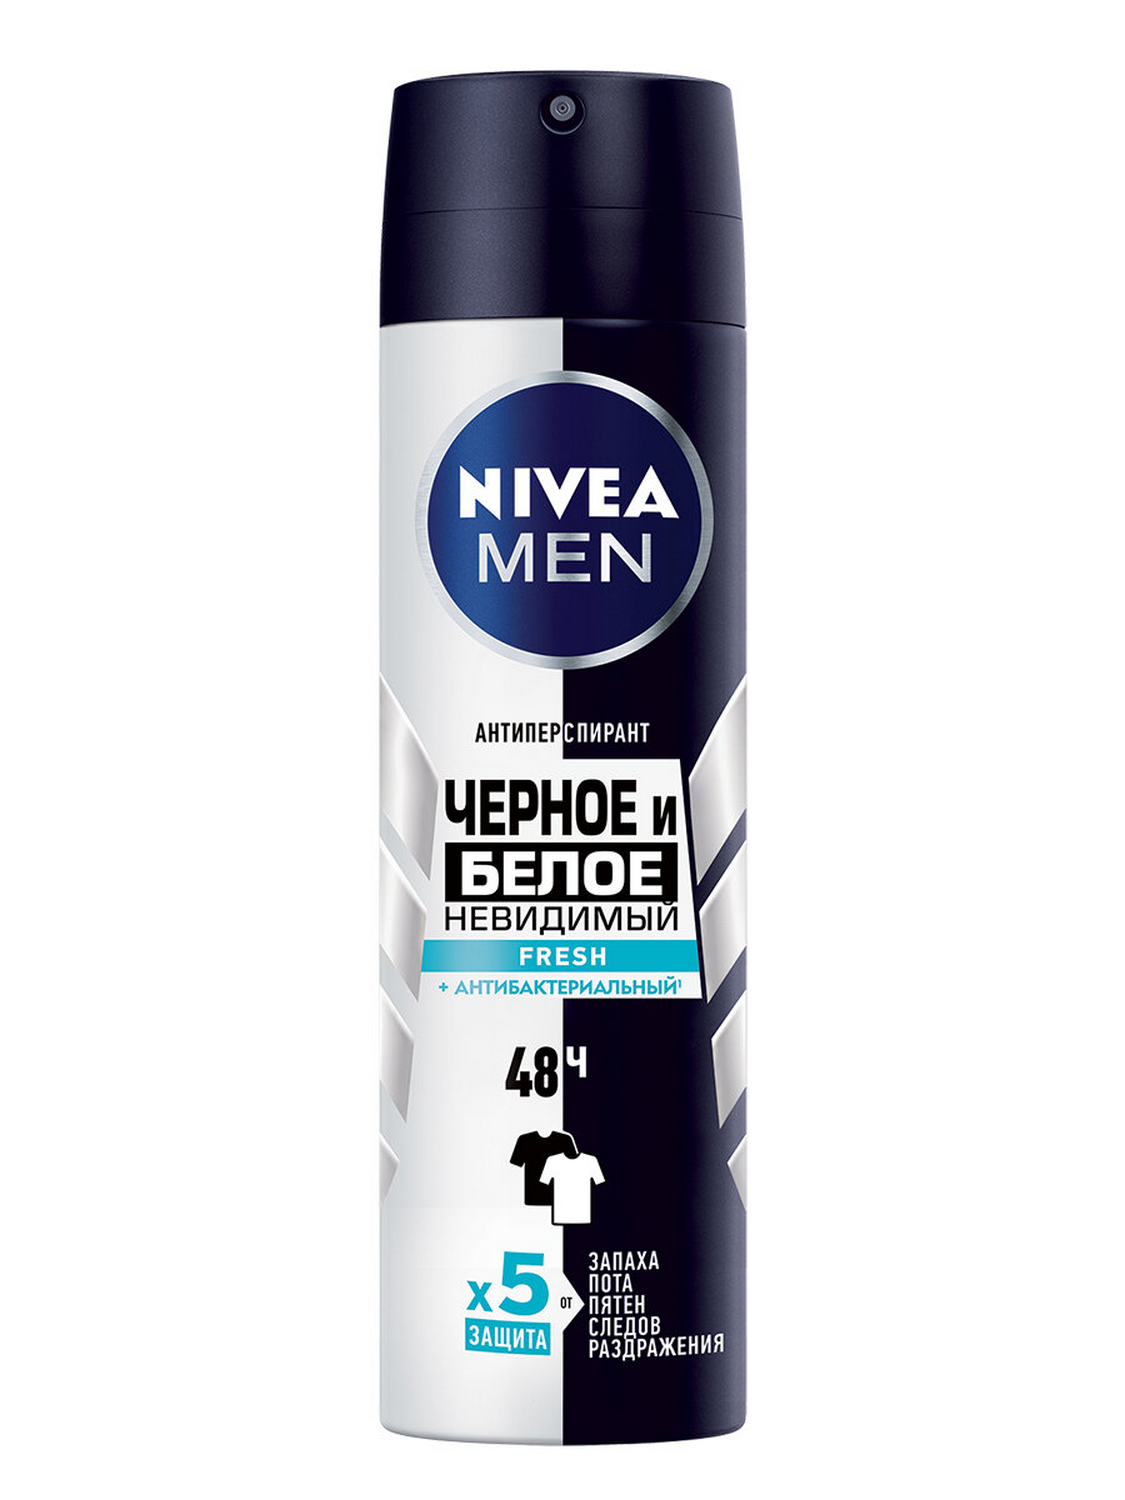 Дезодорант-антиперсперант NIVEA MEN Черное и Белое Невидимый Fresh антибактериальный эффект, 150 мл